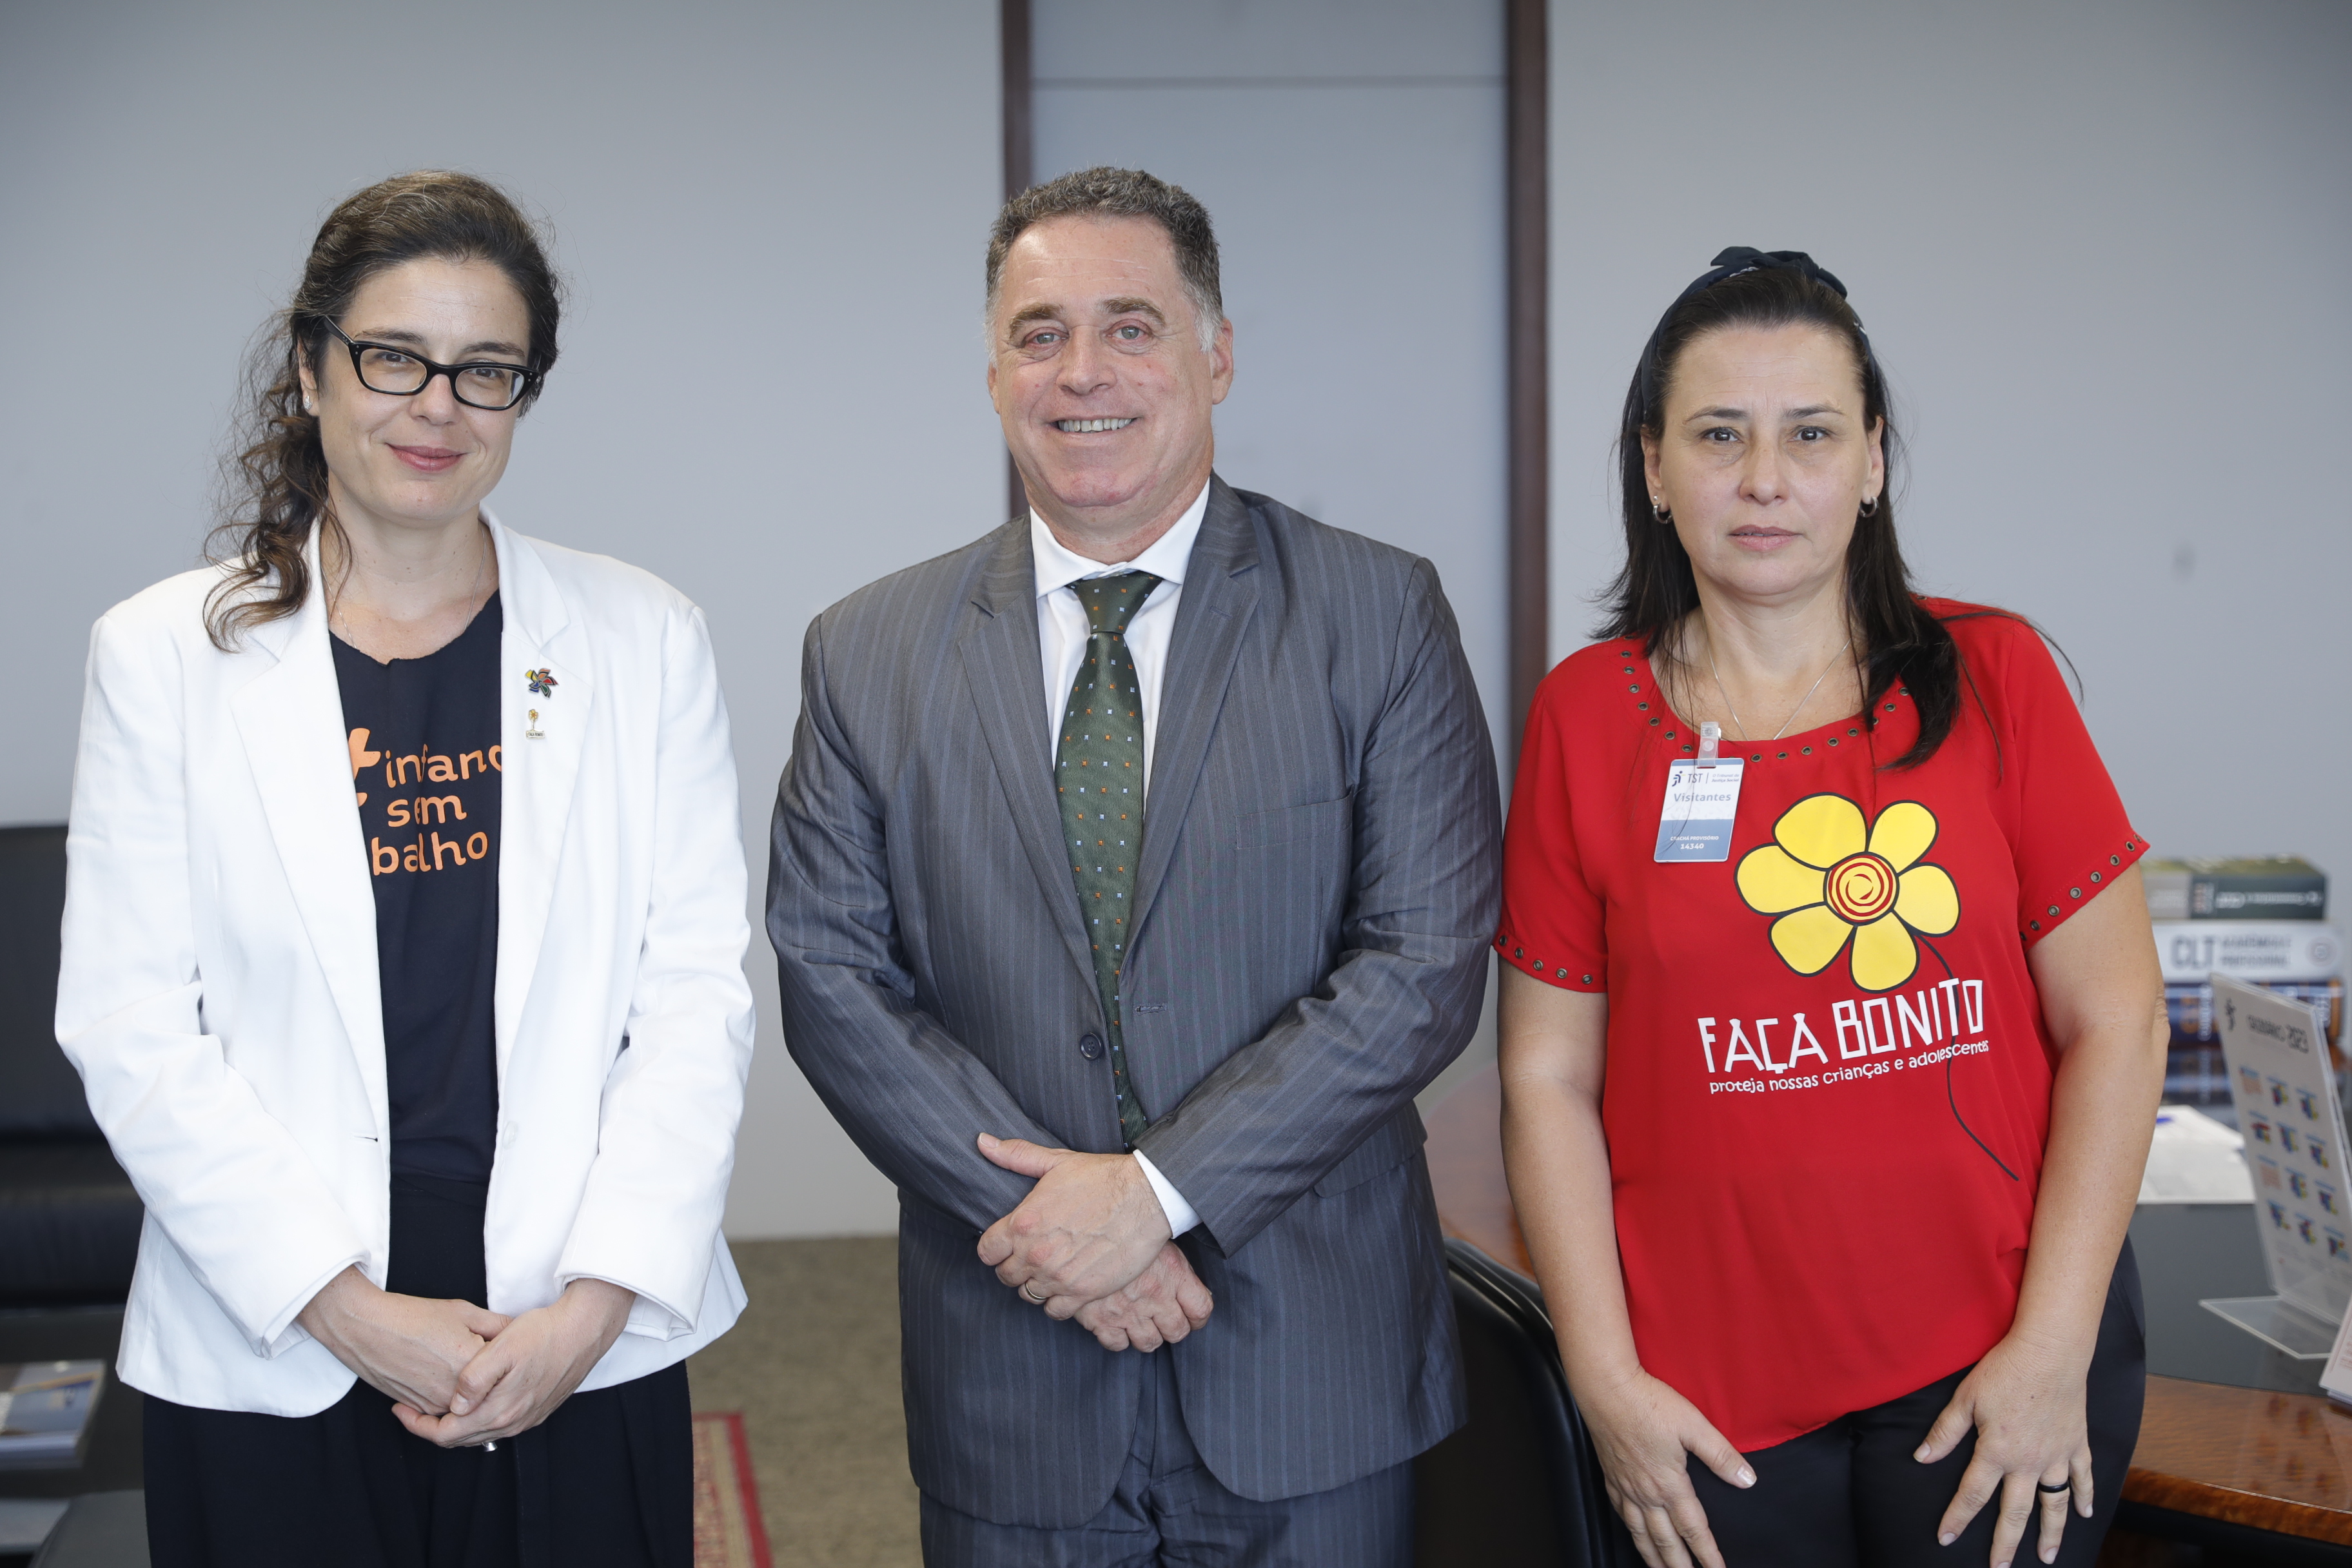 Ministro Evandro Valadão com as representantes do FNPETI, Katerina Volcov (esquerda) e Faça Bonito, Karina Figueiredo (direita). (Foto: Felipe Sampaio - Secom/TST)